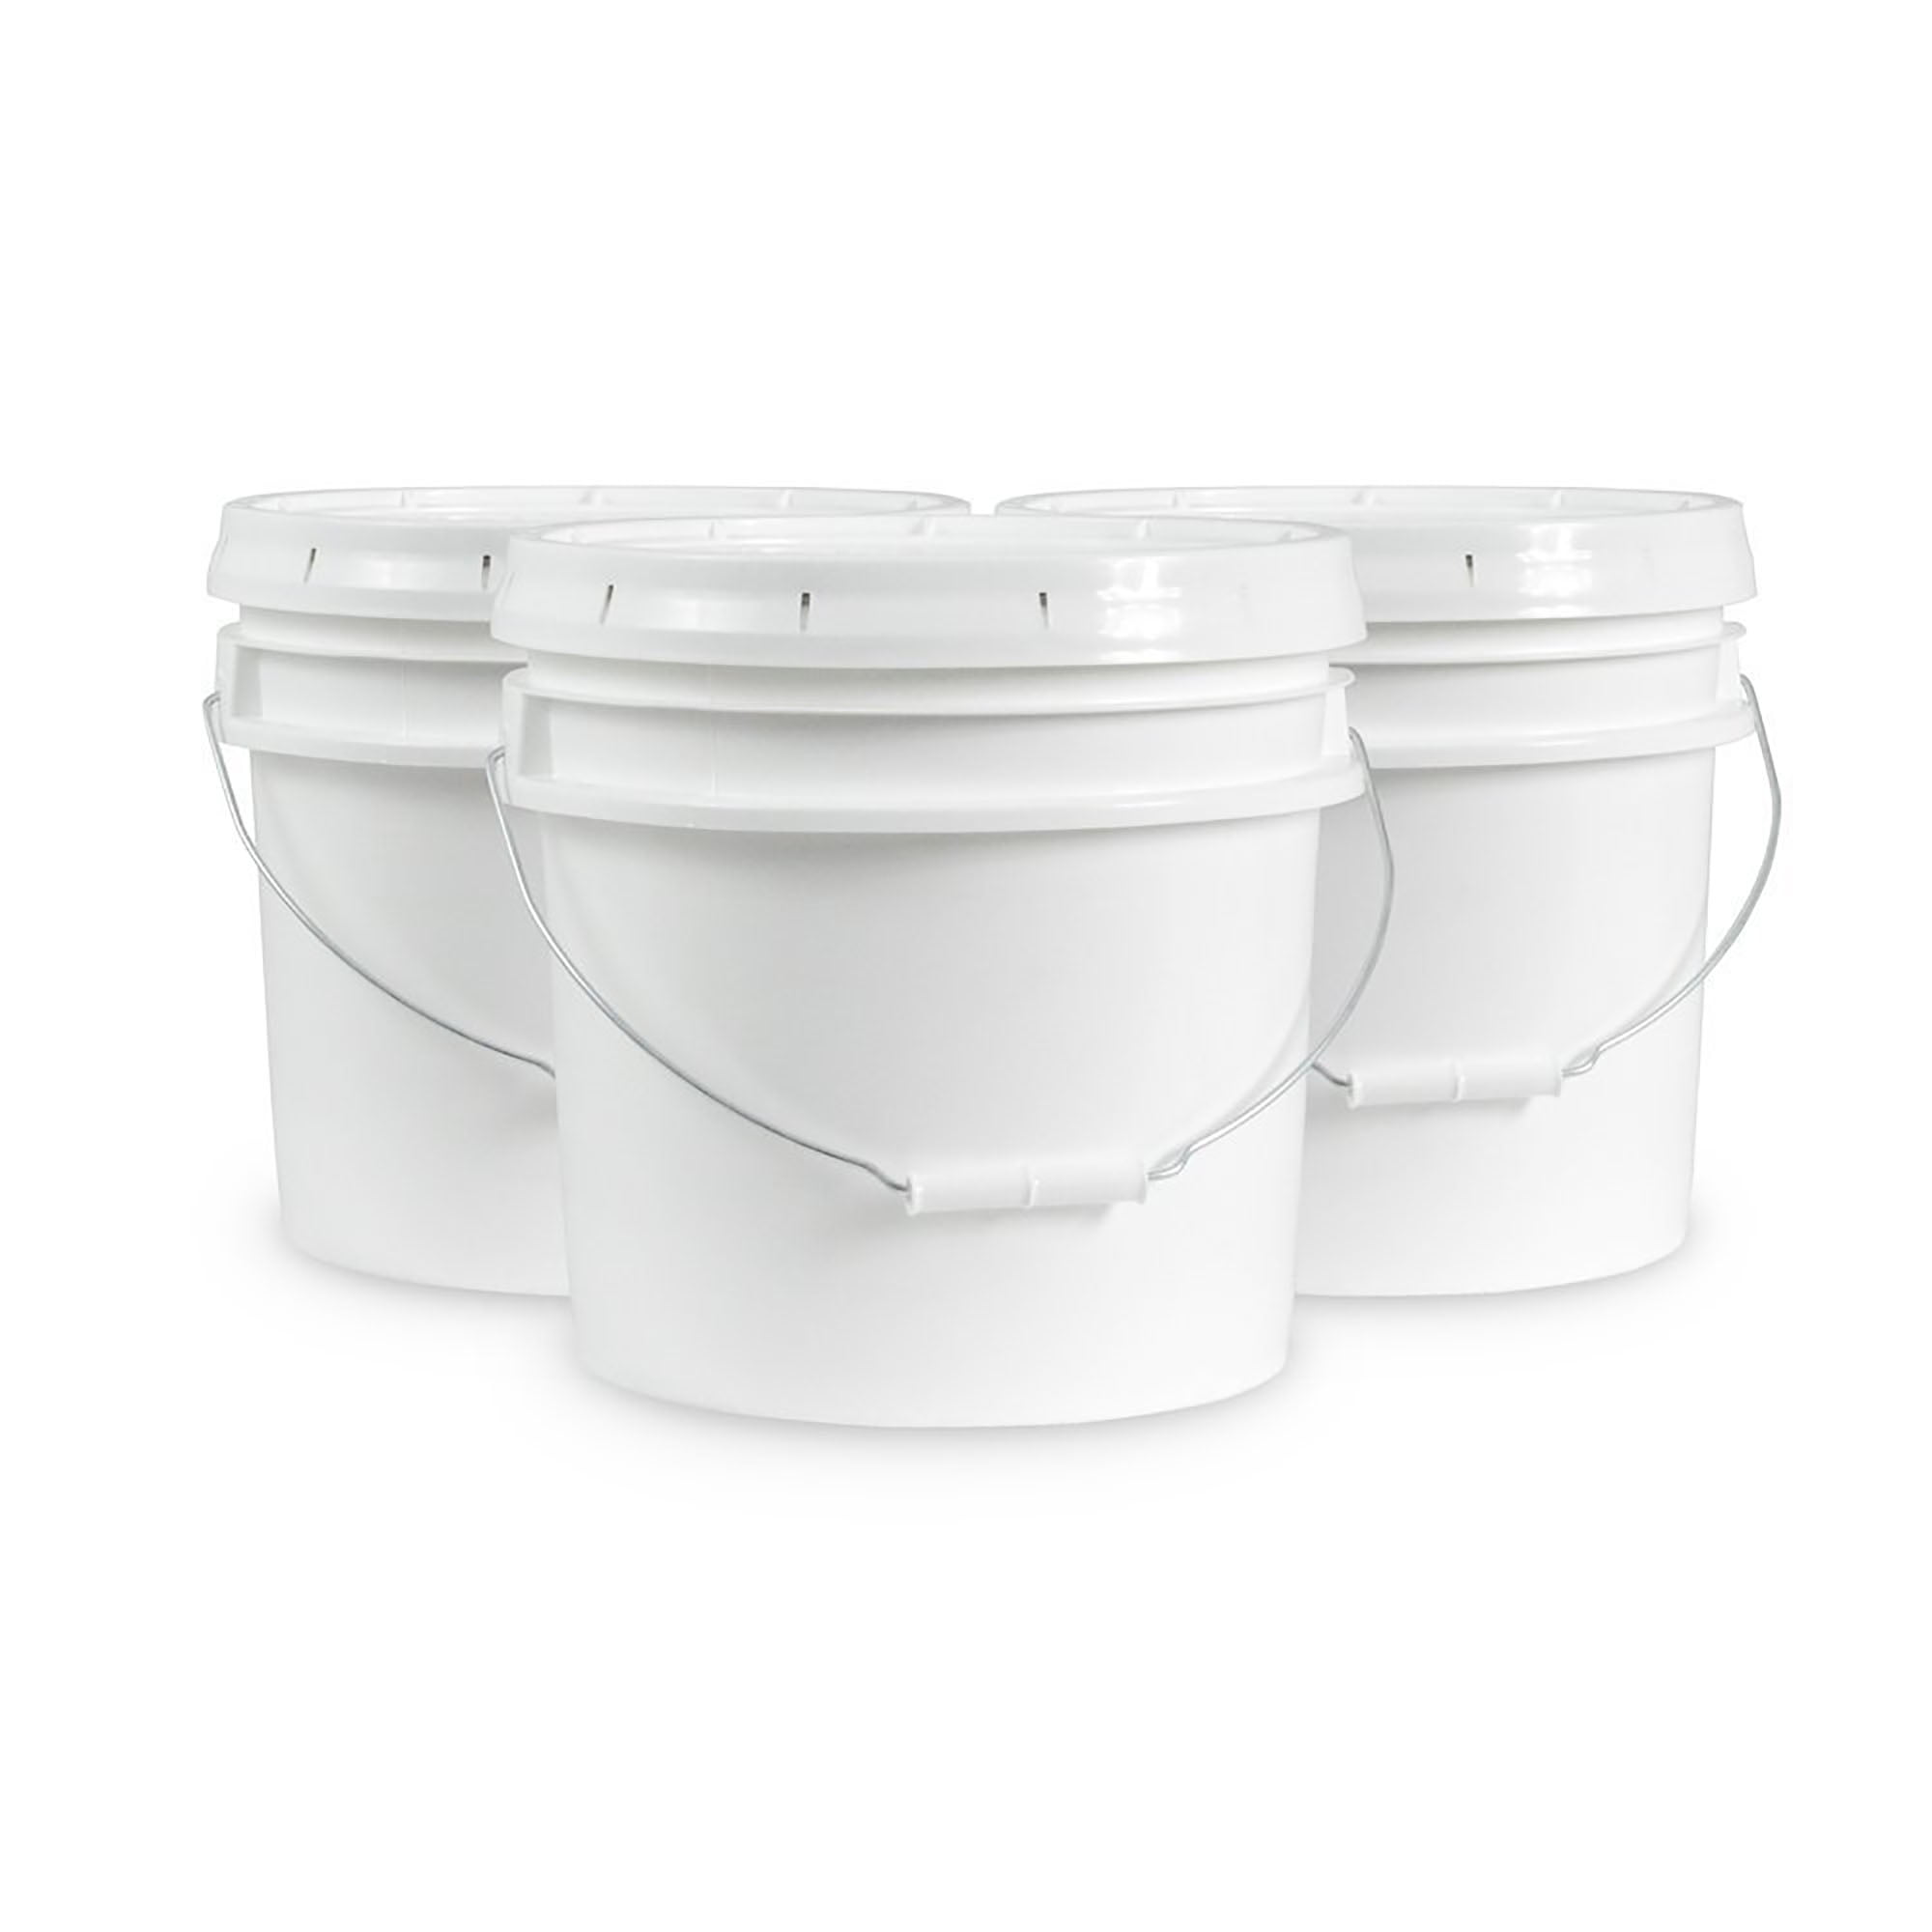 DI Accessories 3.5 Gallon Bucket - White